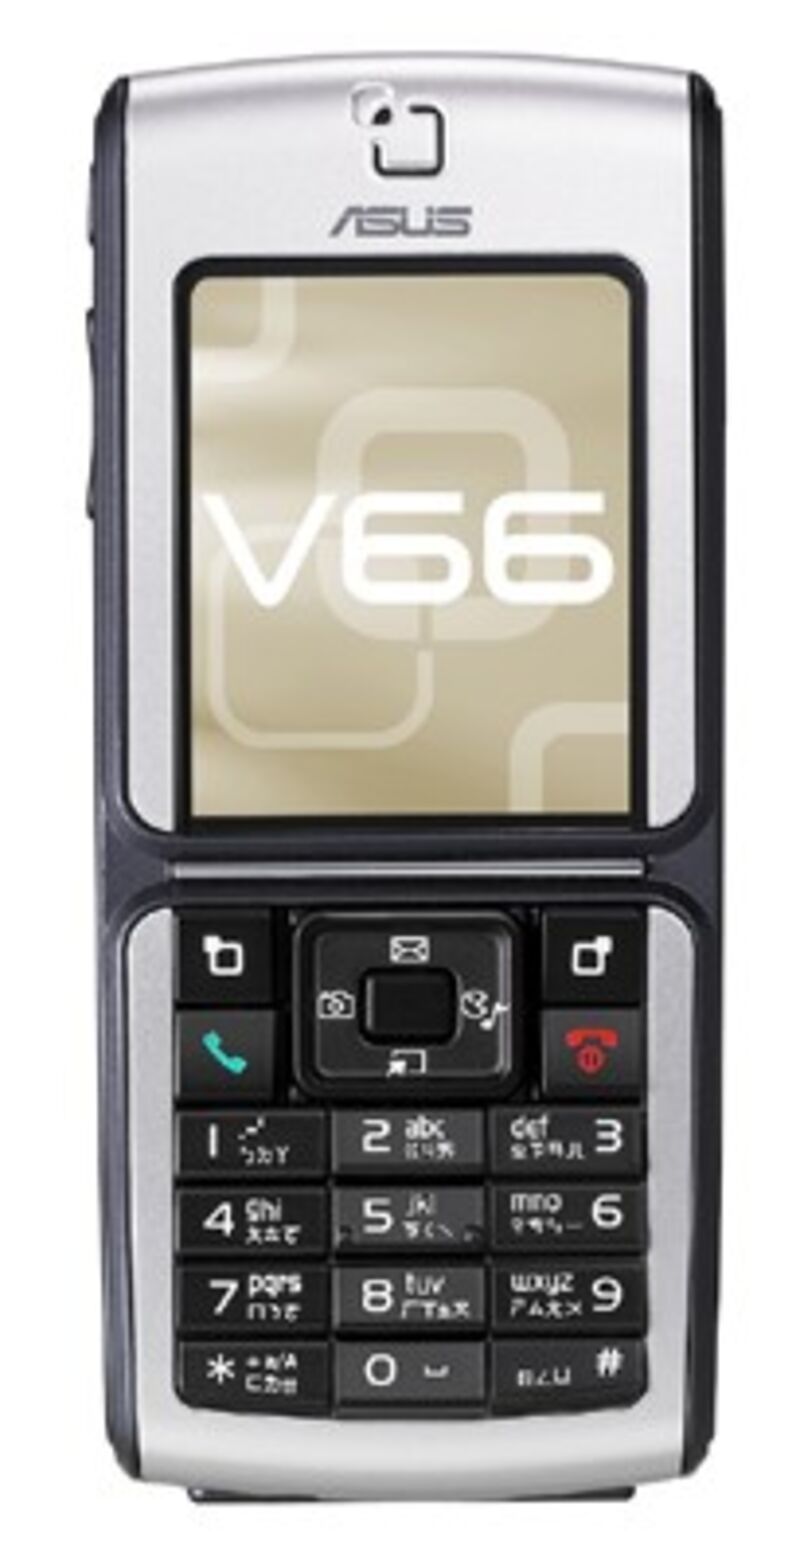 Asus V66